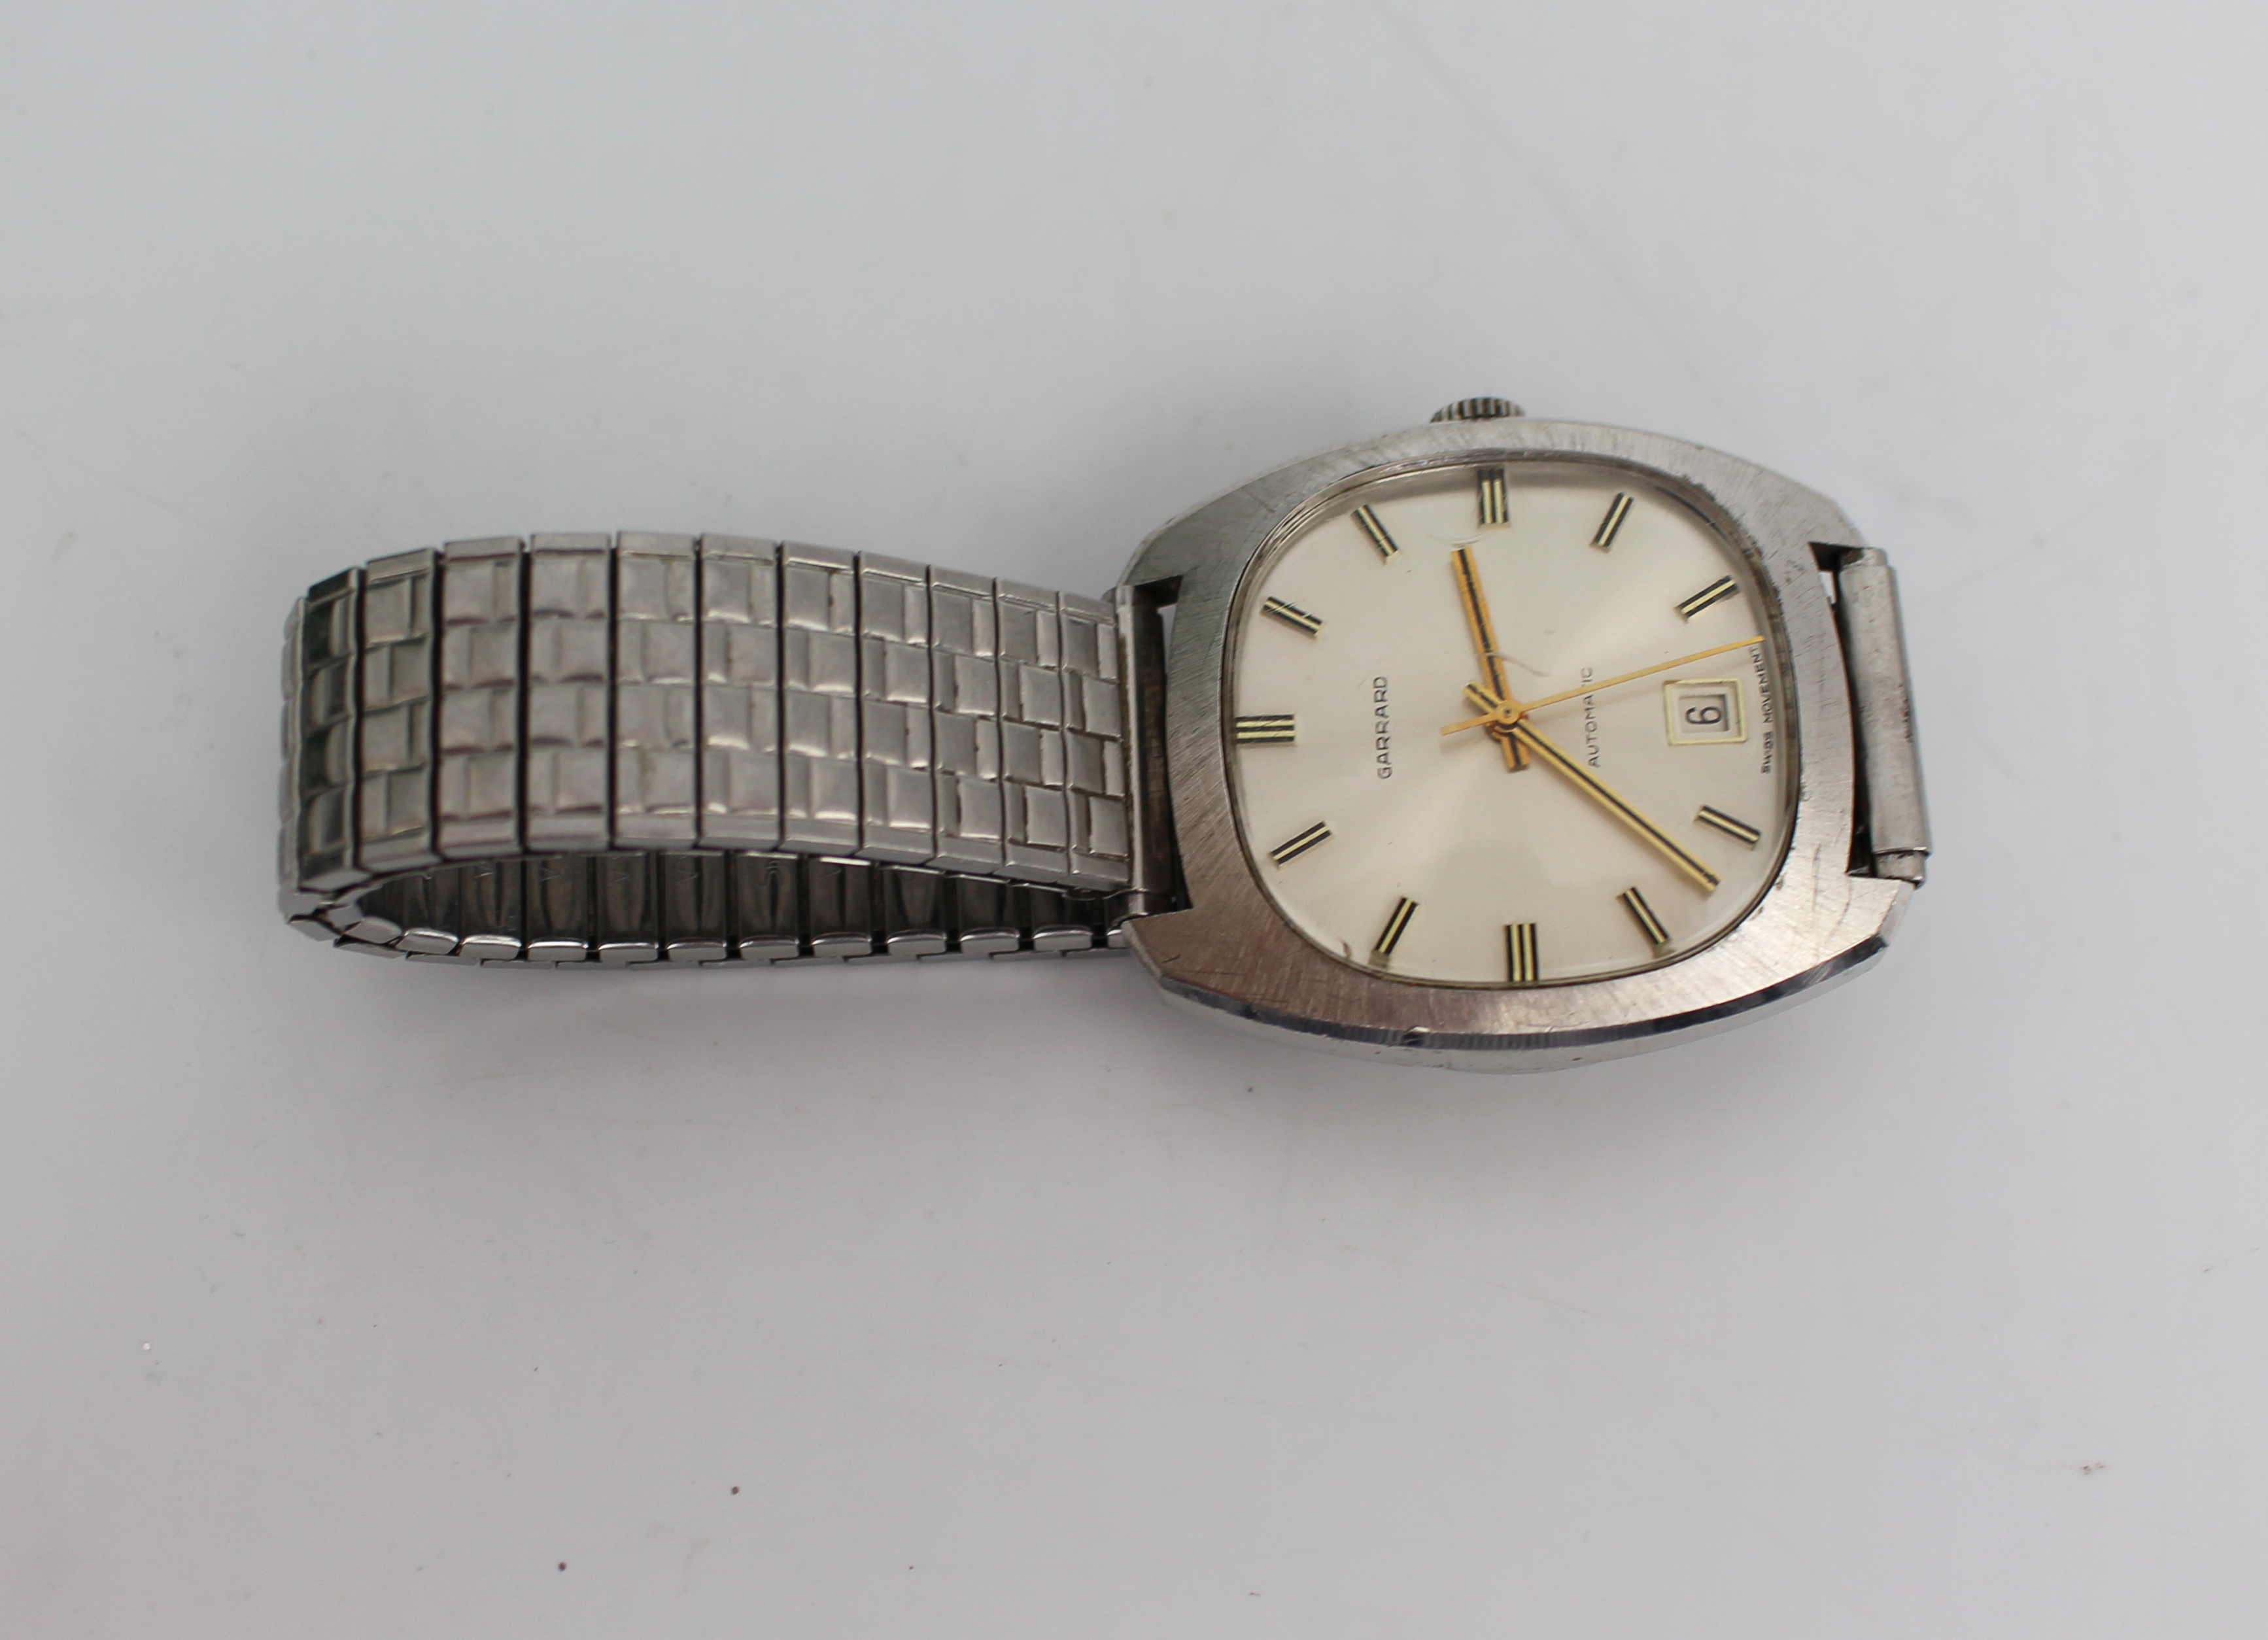 Vintage Presentation Wristwatch by Garrard - Image 3 of 4